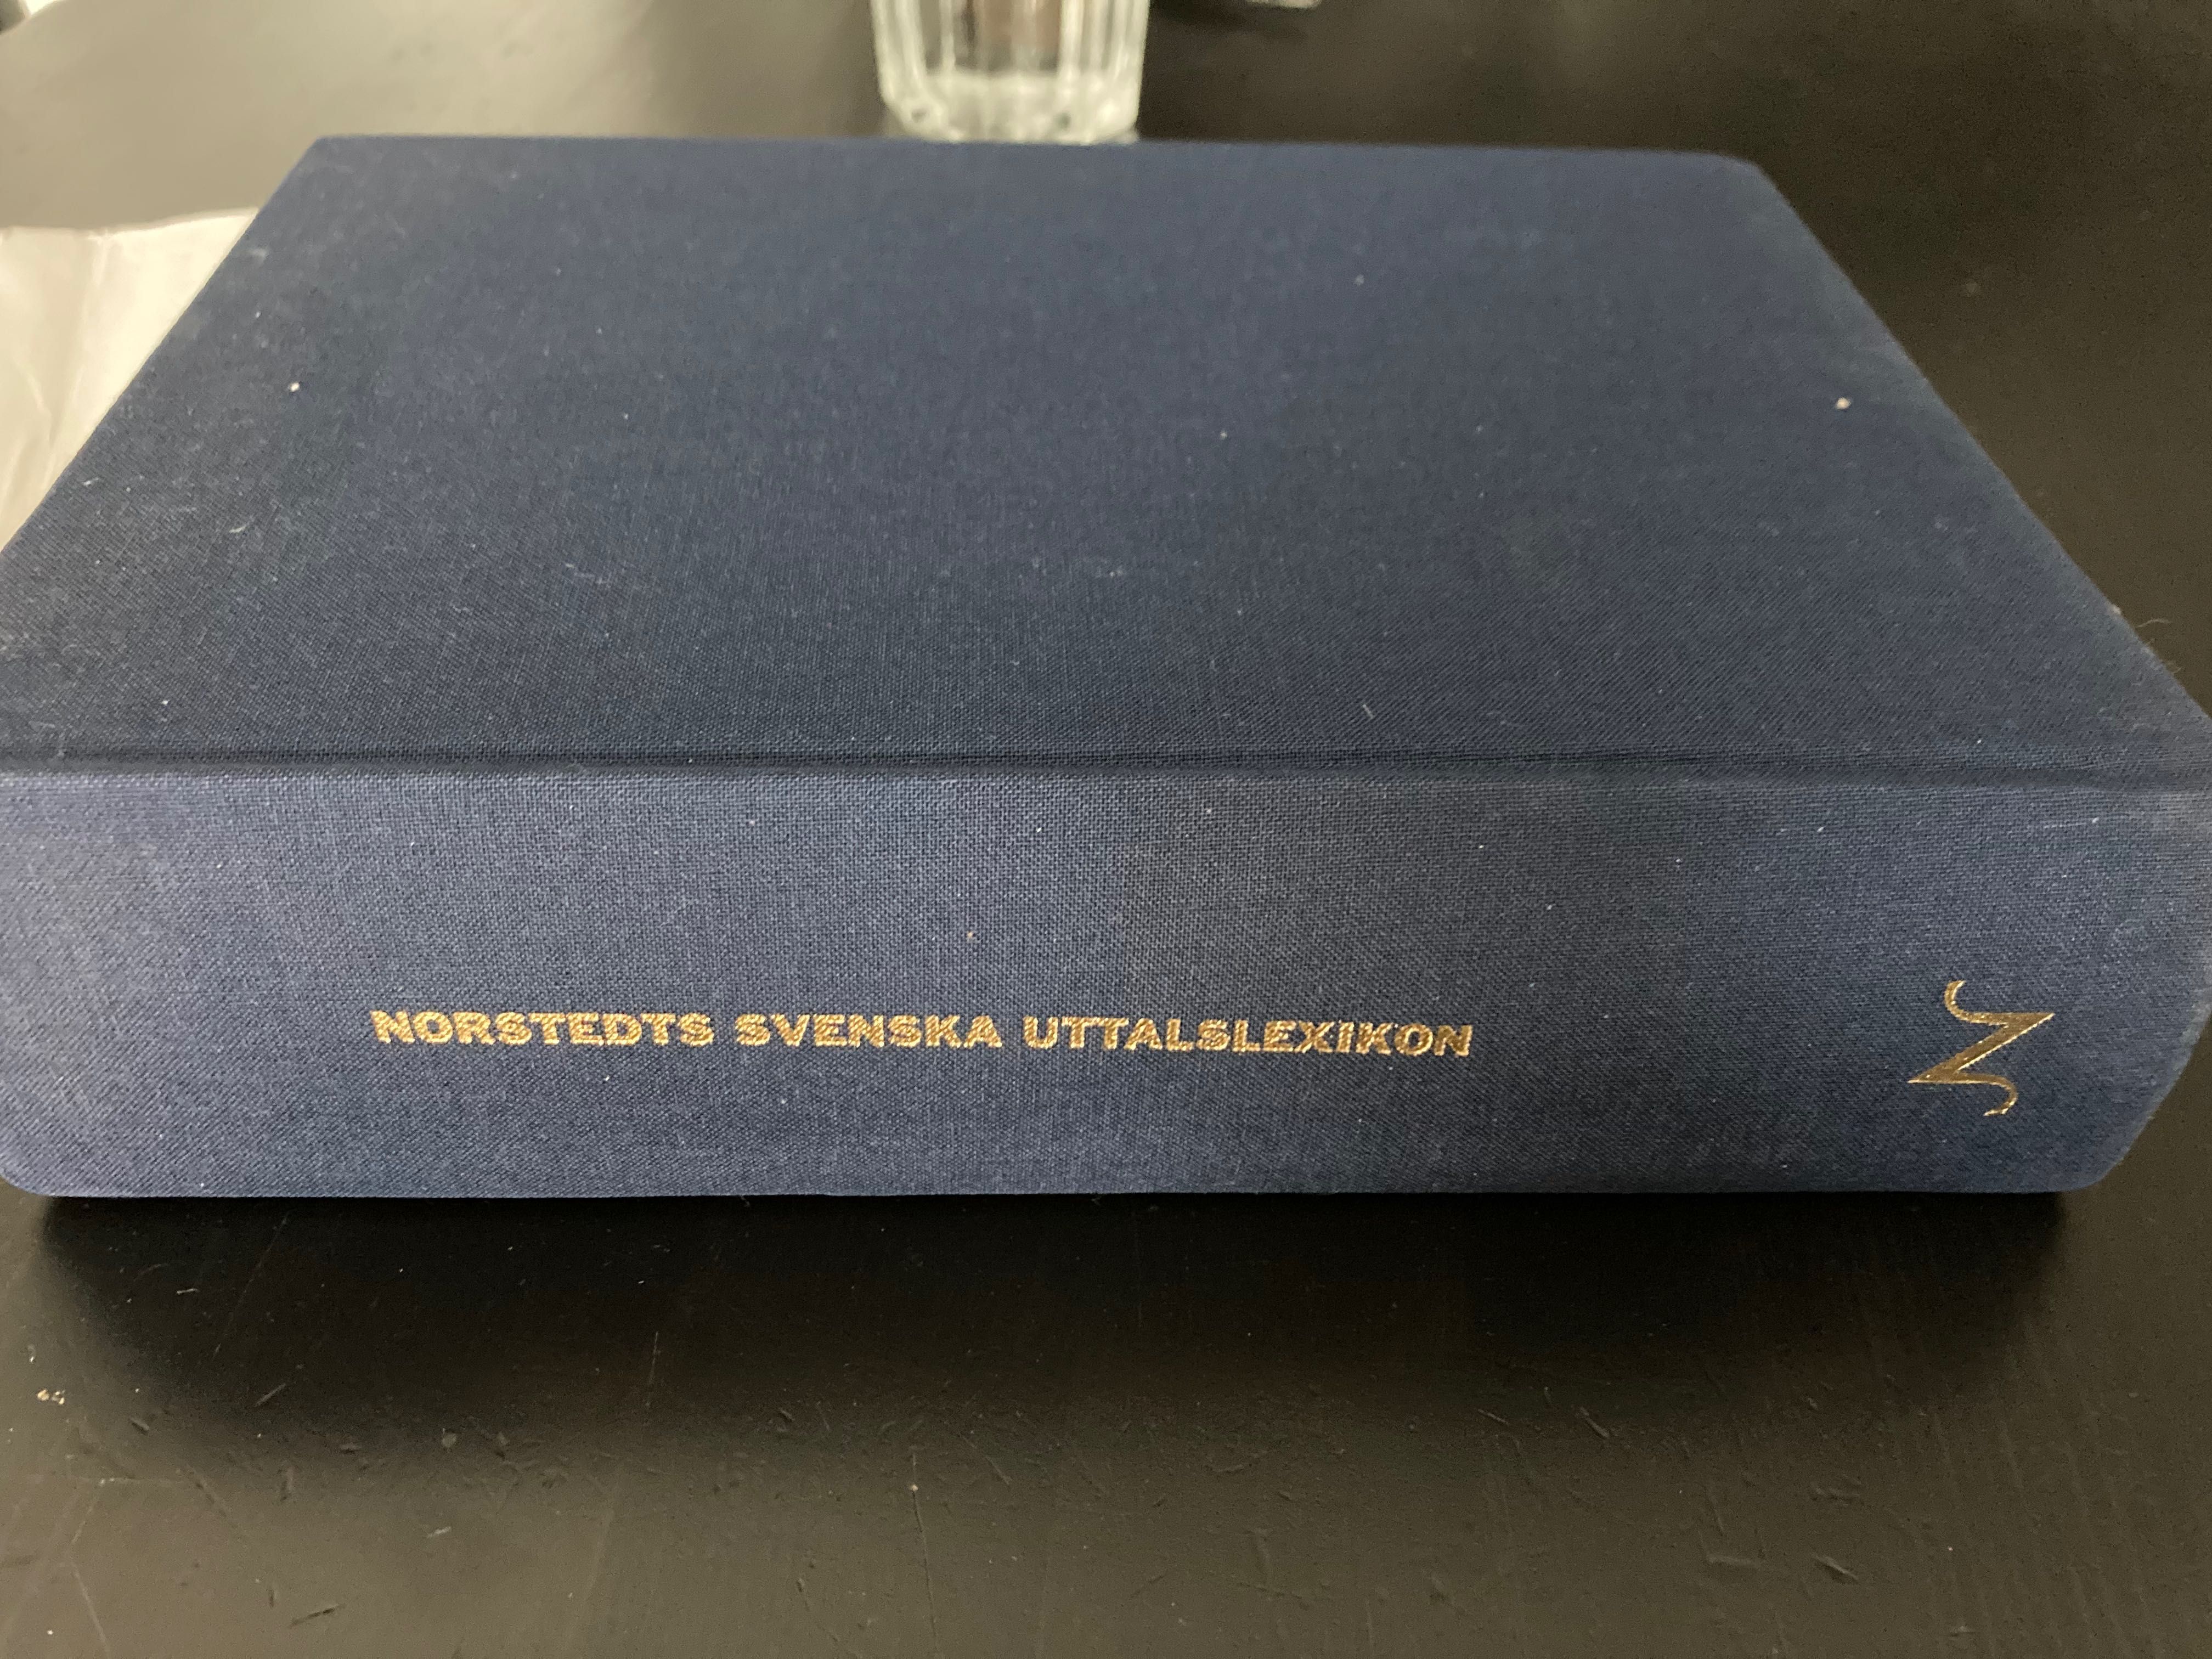 Svenska uttalslexikon Norstedts